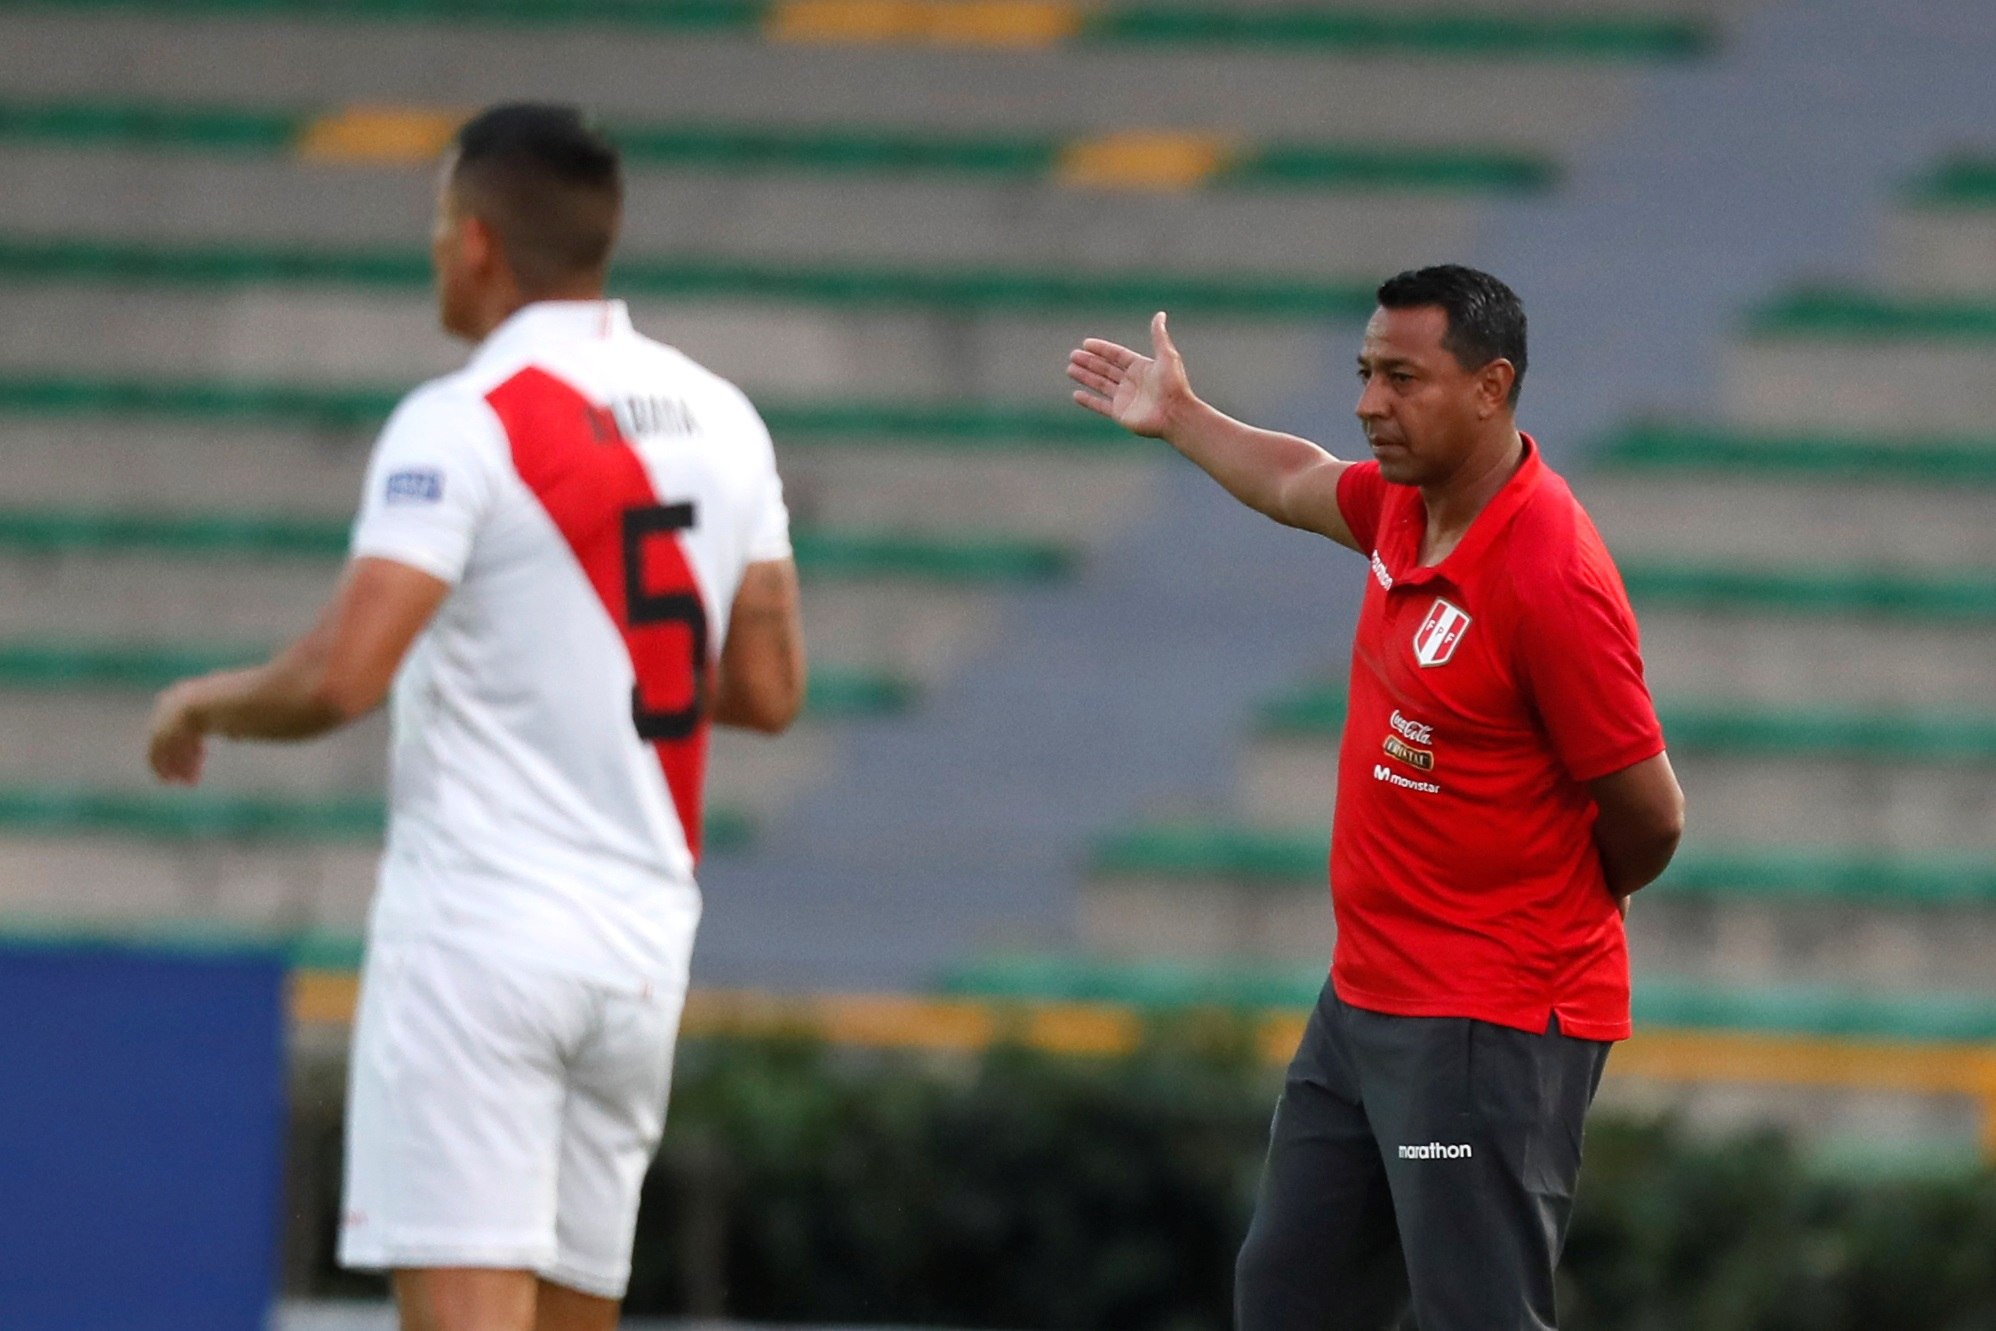  El entrenador de Perú Nolberto Solano (derecha) tras ser amonestado por incumplir la cuarentena por coronavirus, contó una de sus más grandes anécdotas. (Foto Prensa Libre: EFE)